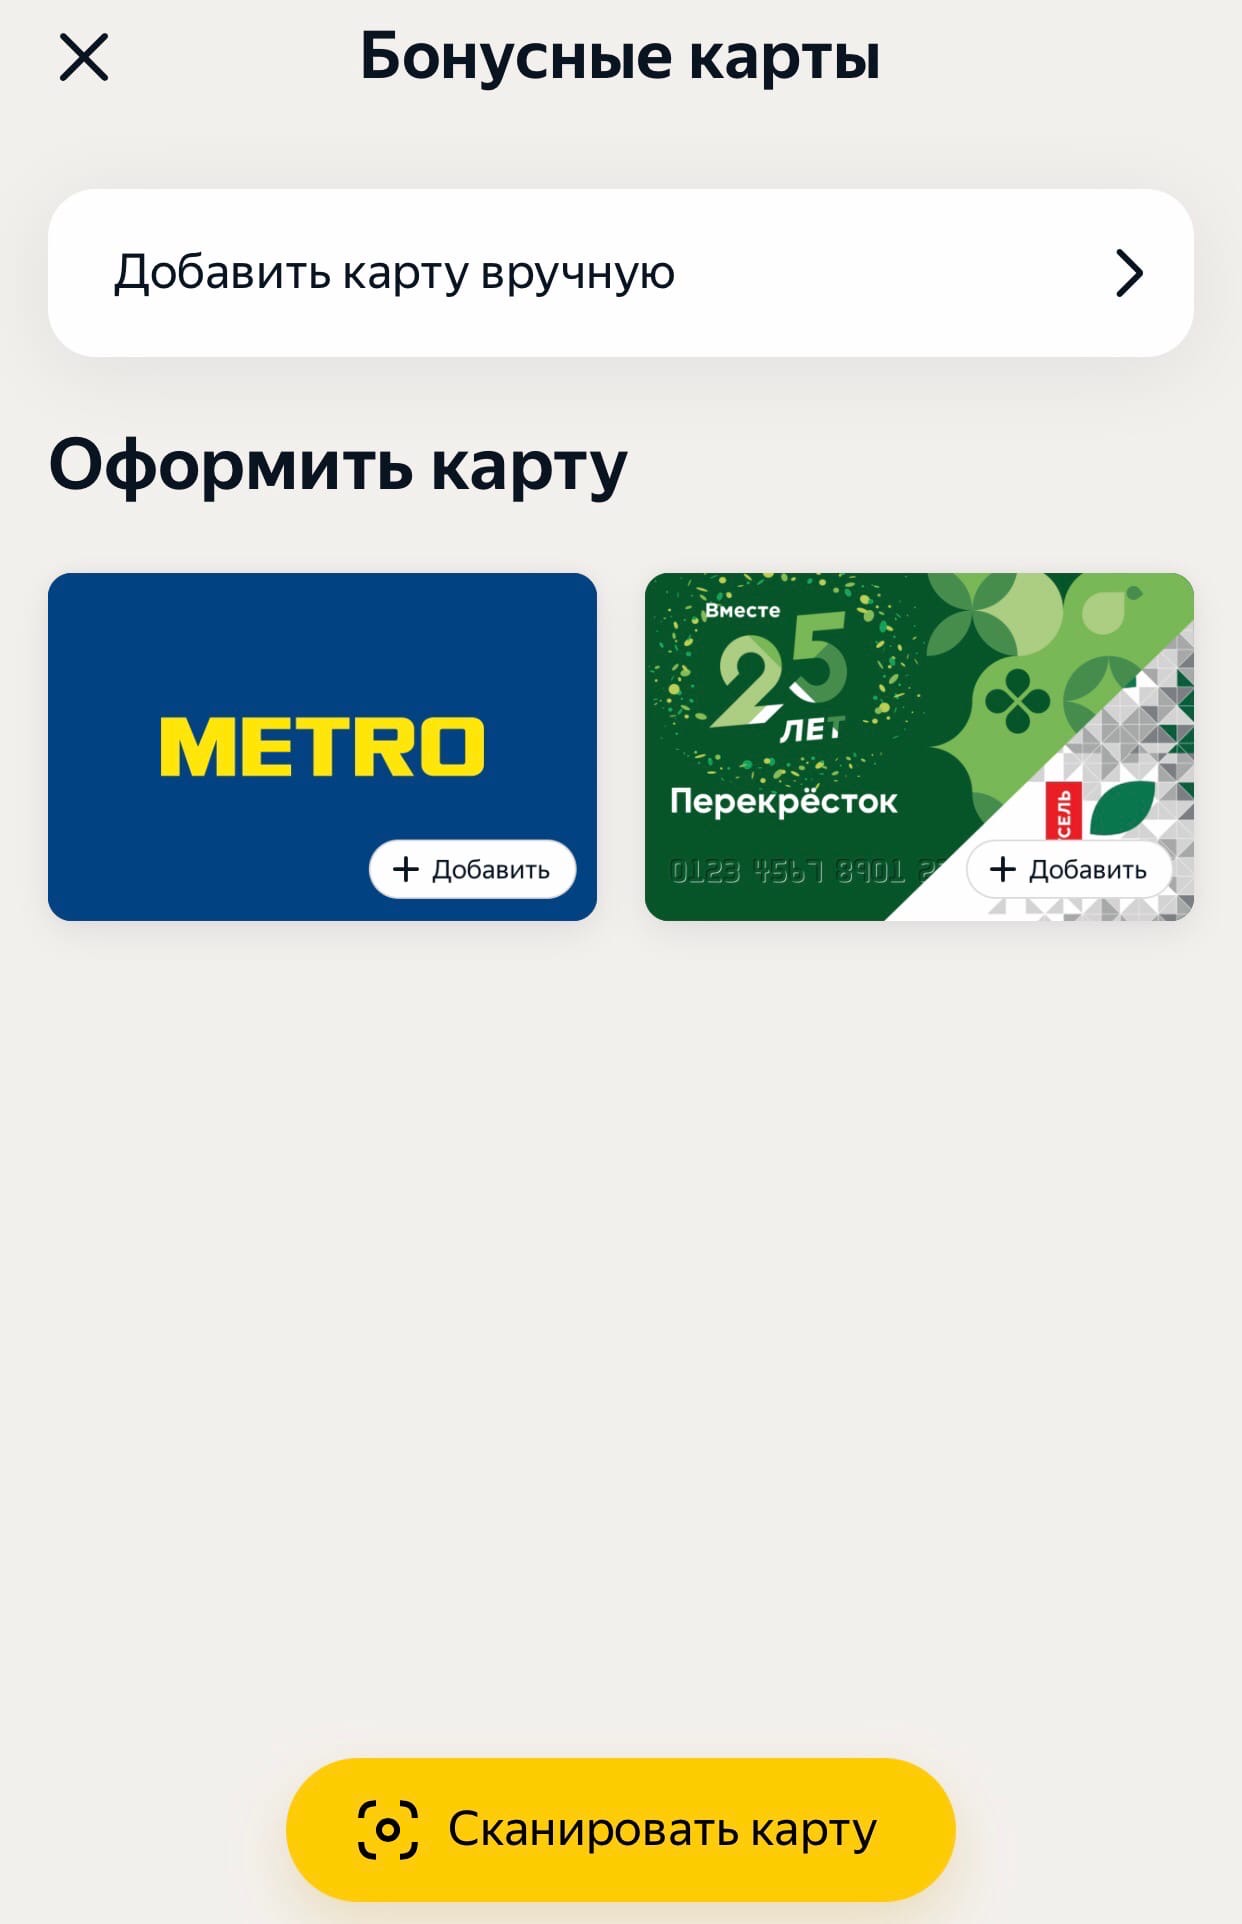 В приложении «Яндекс» теперь можно добавлять свои бонусные и скидочные карты.